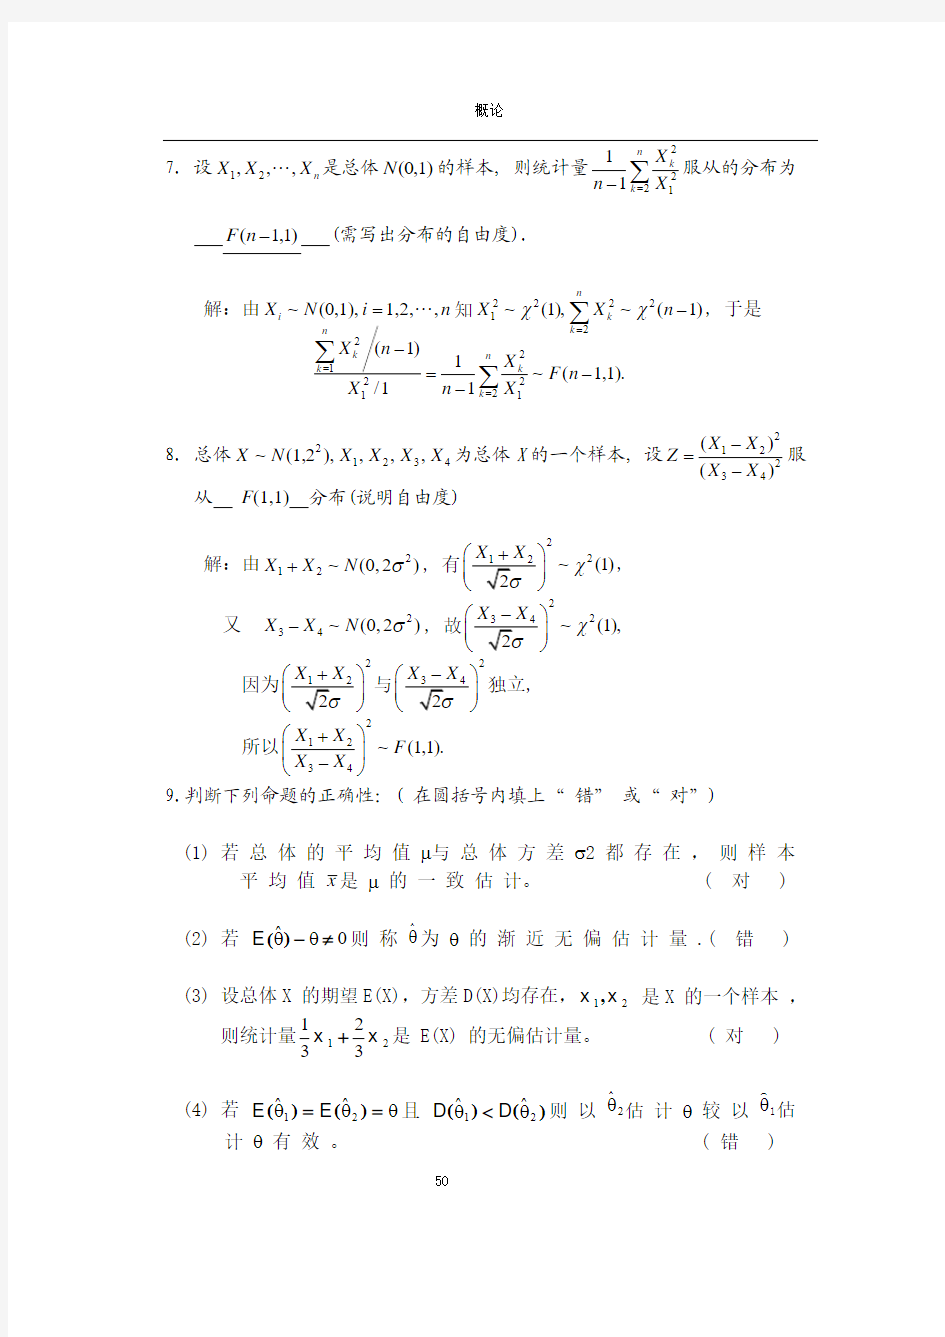 天津理工大学概率论与数理统计第六章习题答案详解